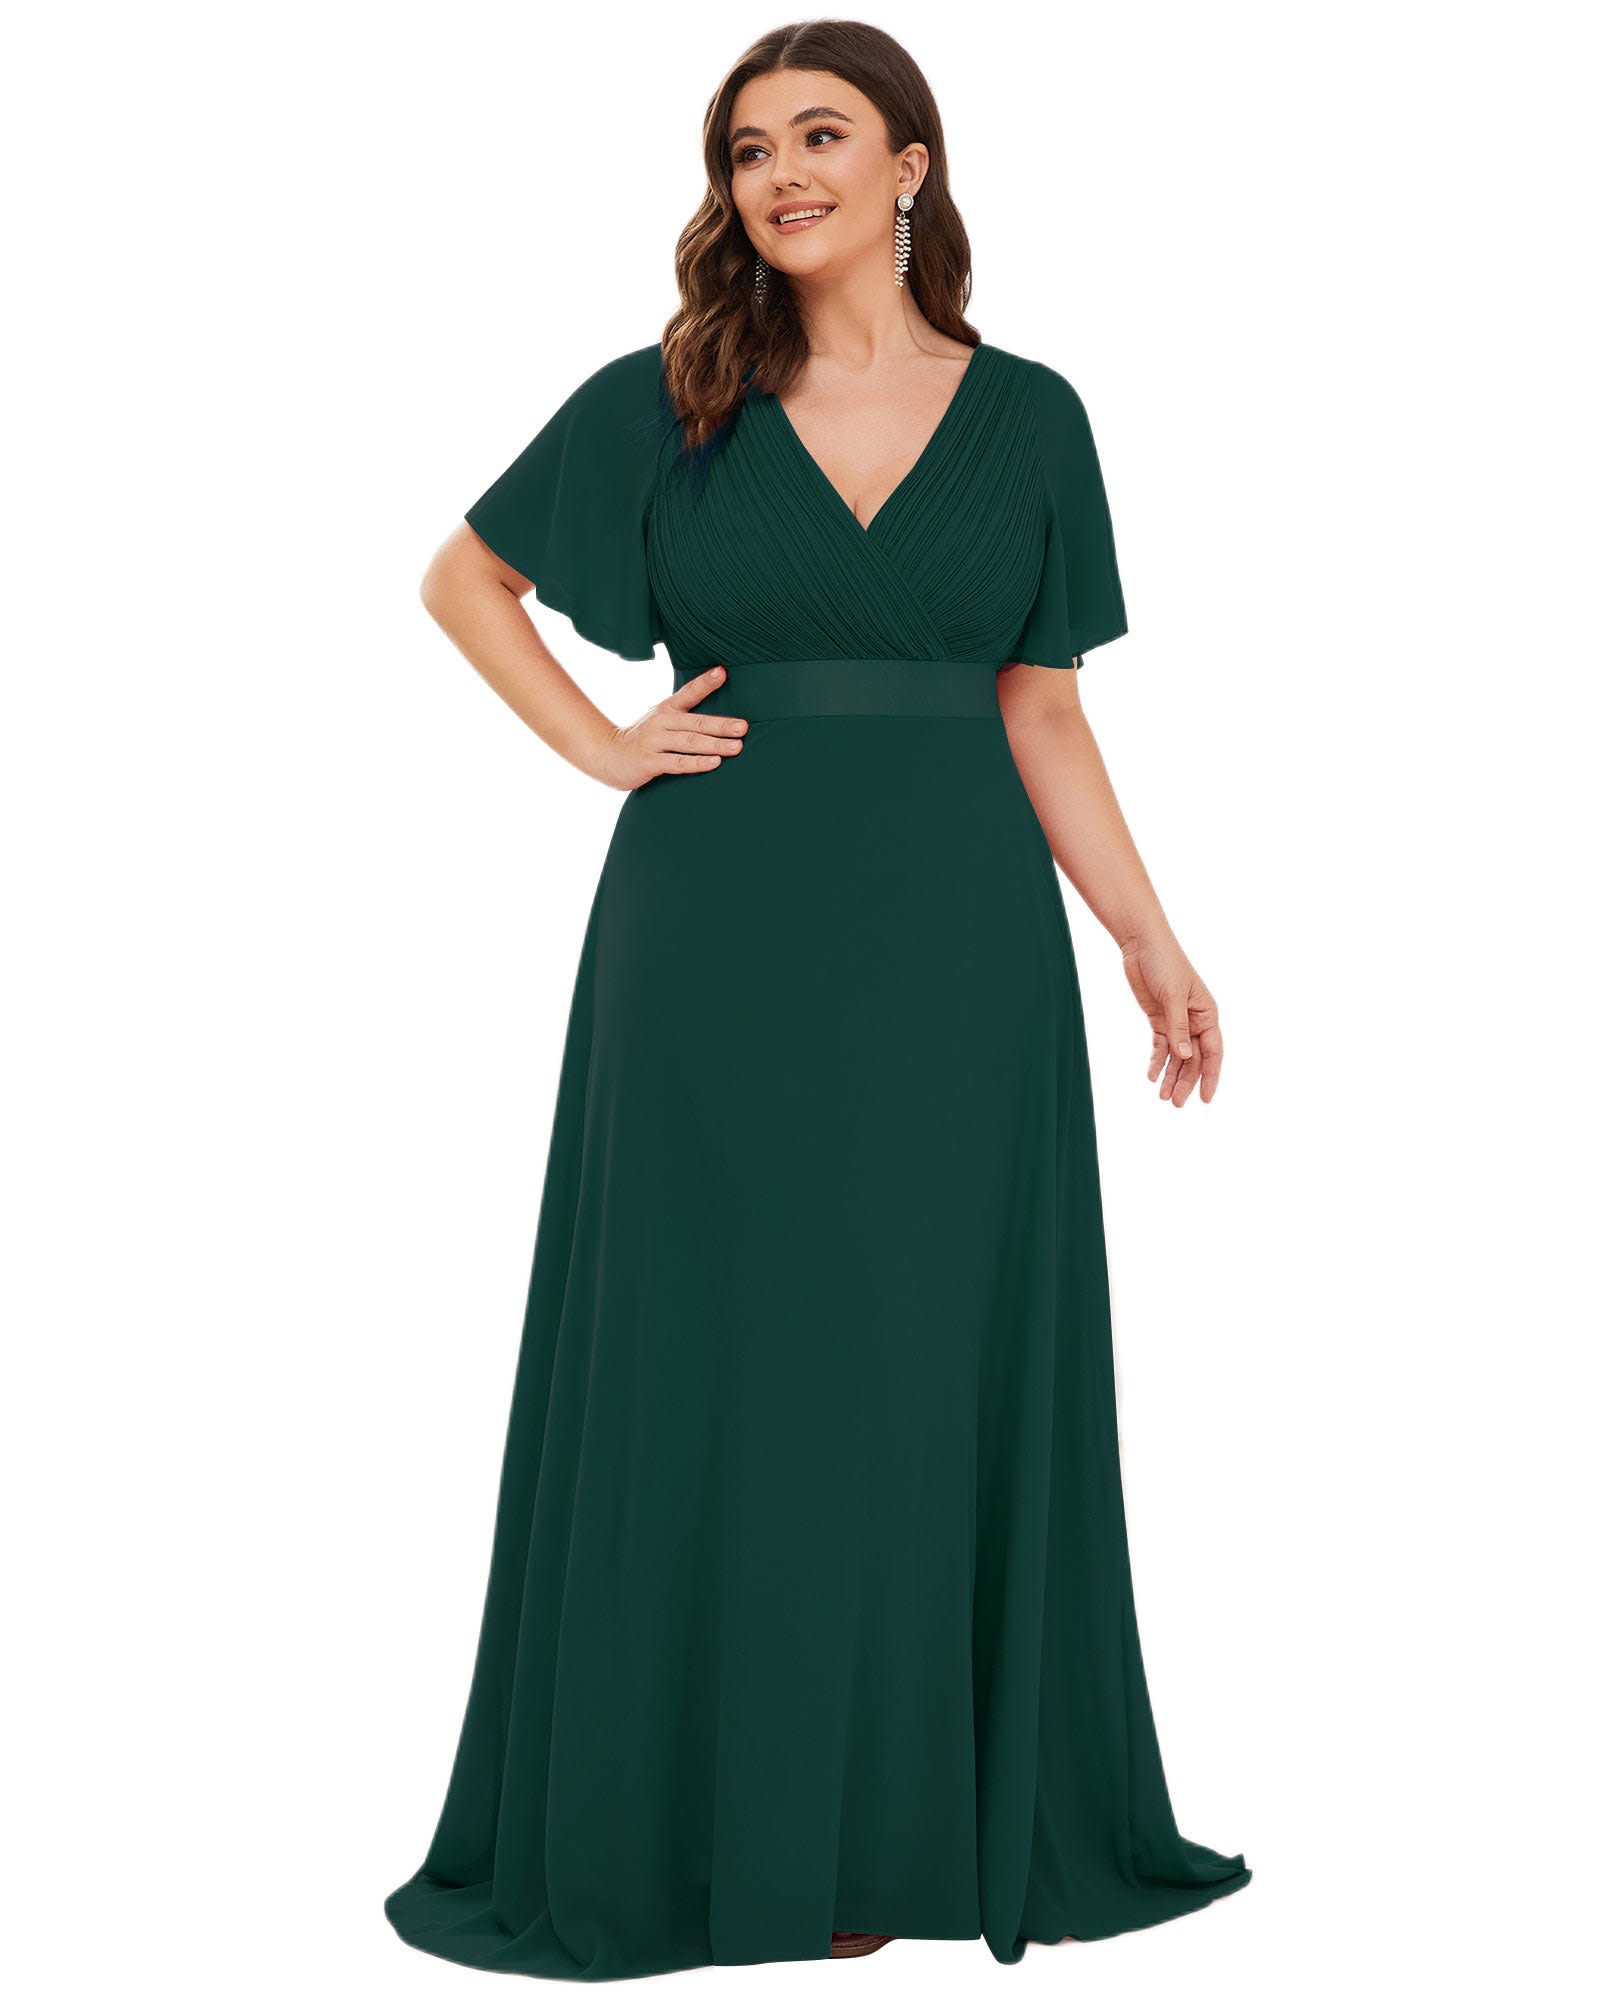 Long Chiffon Empire Waist Bridesmaid Dress with Short Flutter Sleeves | Dark Green